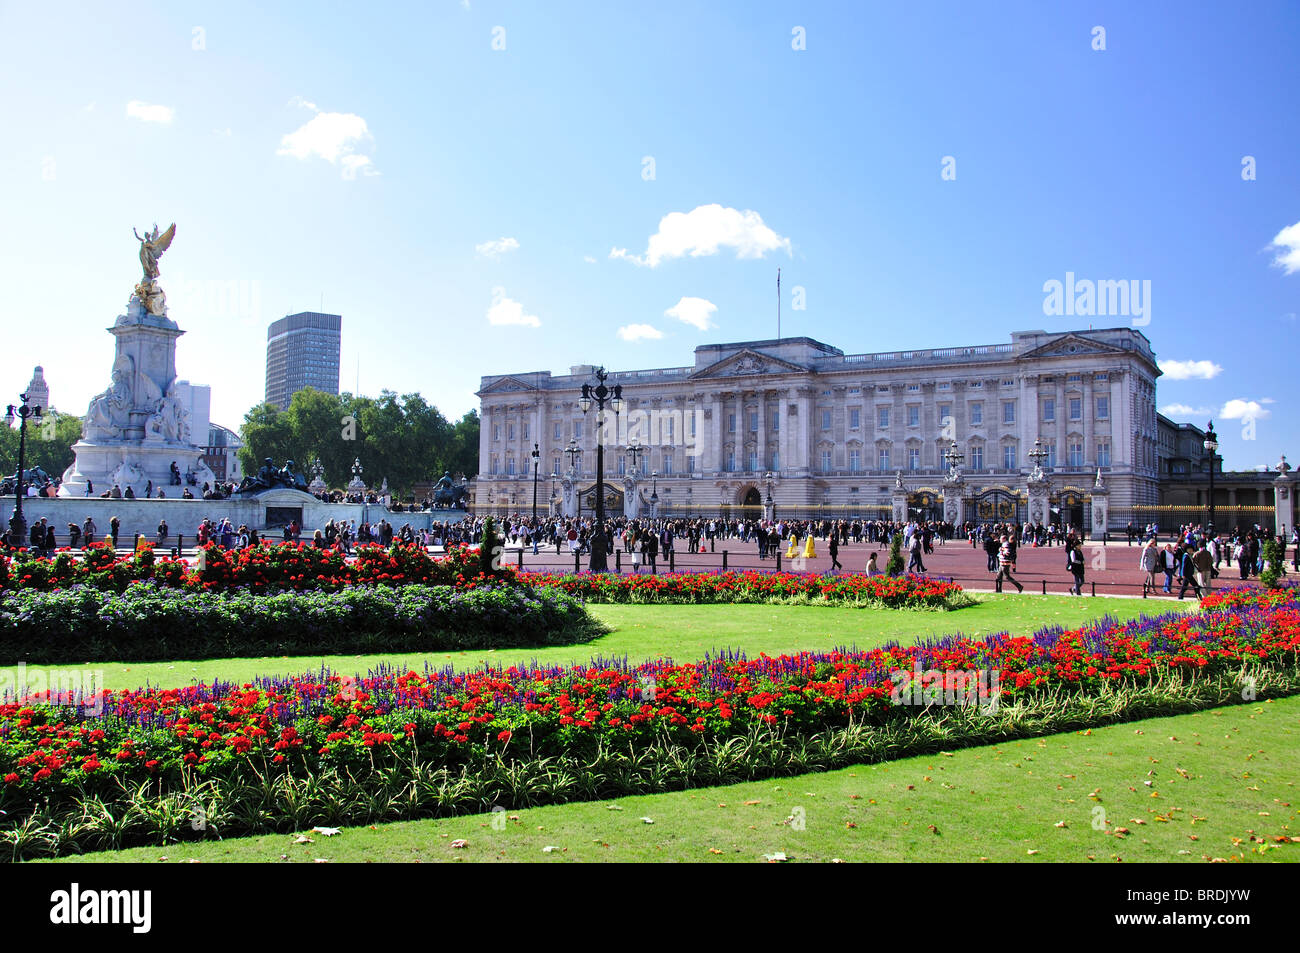 Le palais de Buckingham et du Victoria Memorial, la ville de Westminster, Greater London, Angleterre, Royaume-Uni Banque D'Images